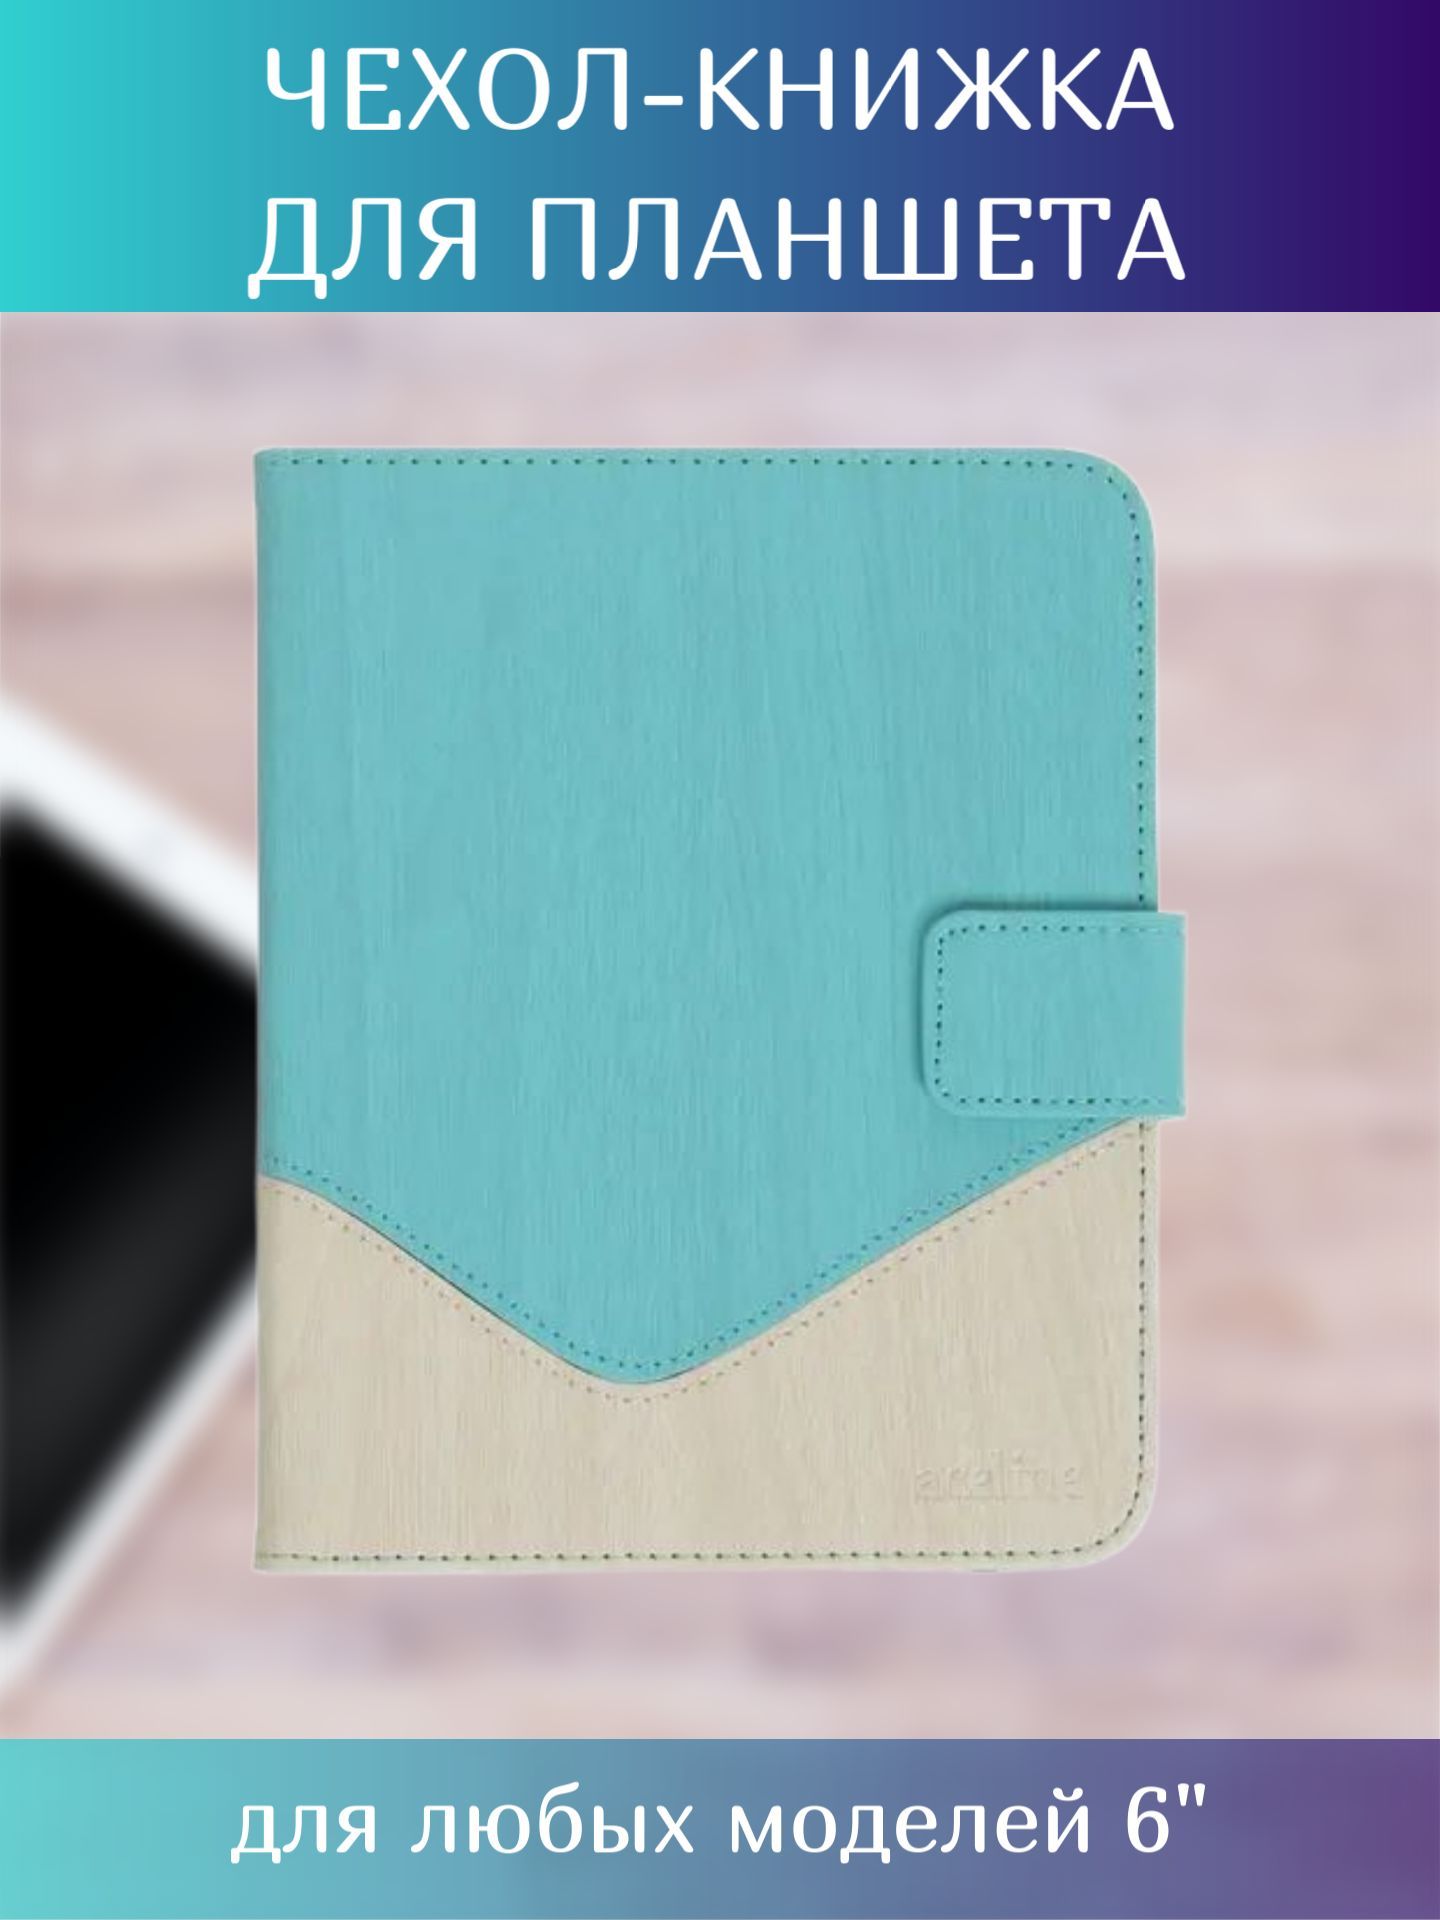 Чехол (обложка) Partner для PocketBook 611 6'' (черный крокодил)